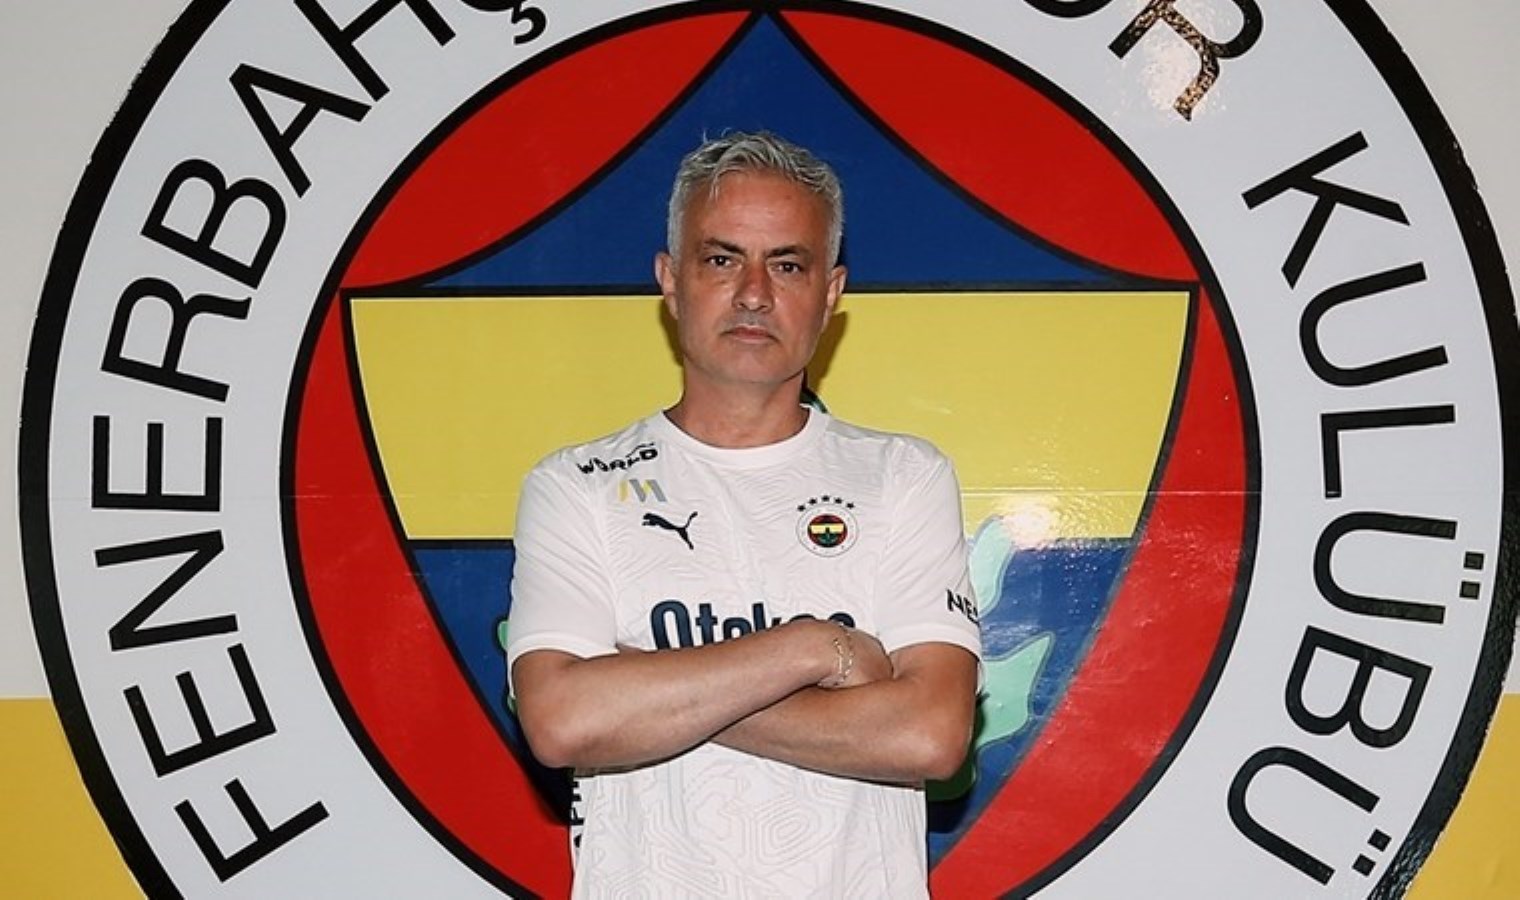 Fenerbahçeli yıldızdan Mourinho sözleri: ‘Mükemmel bir birliktelik olacak’